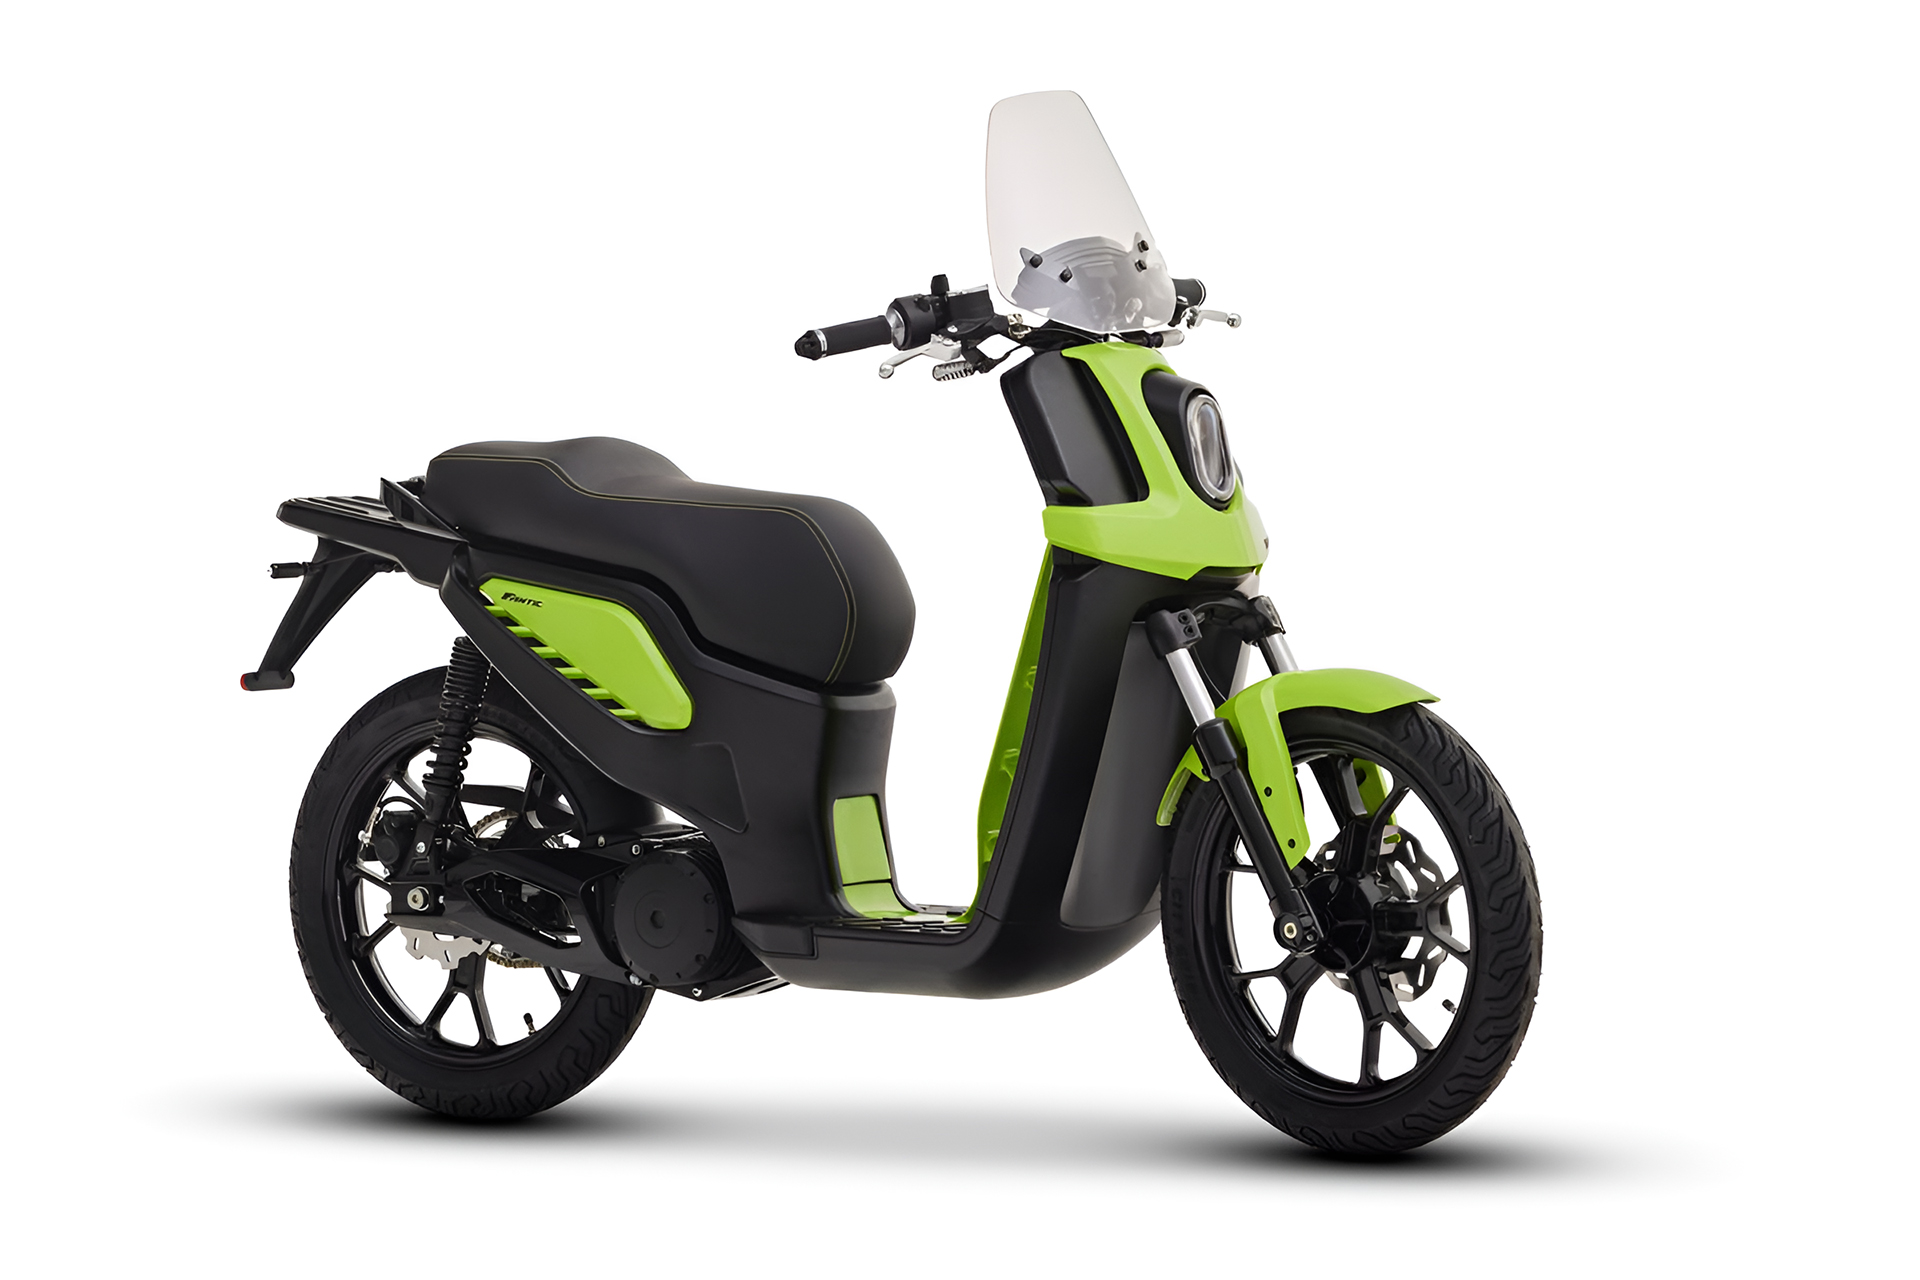 Marca italiana lança Scooter elétrica com bateria de 4,4 kWh que proporciona autonomia de até 99,7 quilômetros e pode ser pilotada dentro e fora do centro urbano